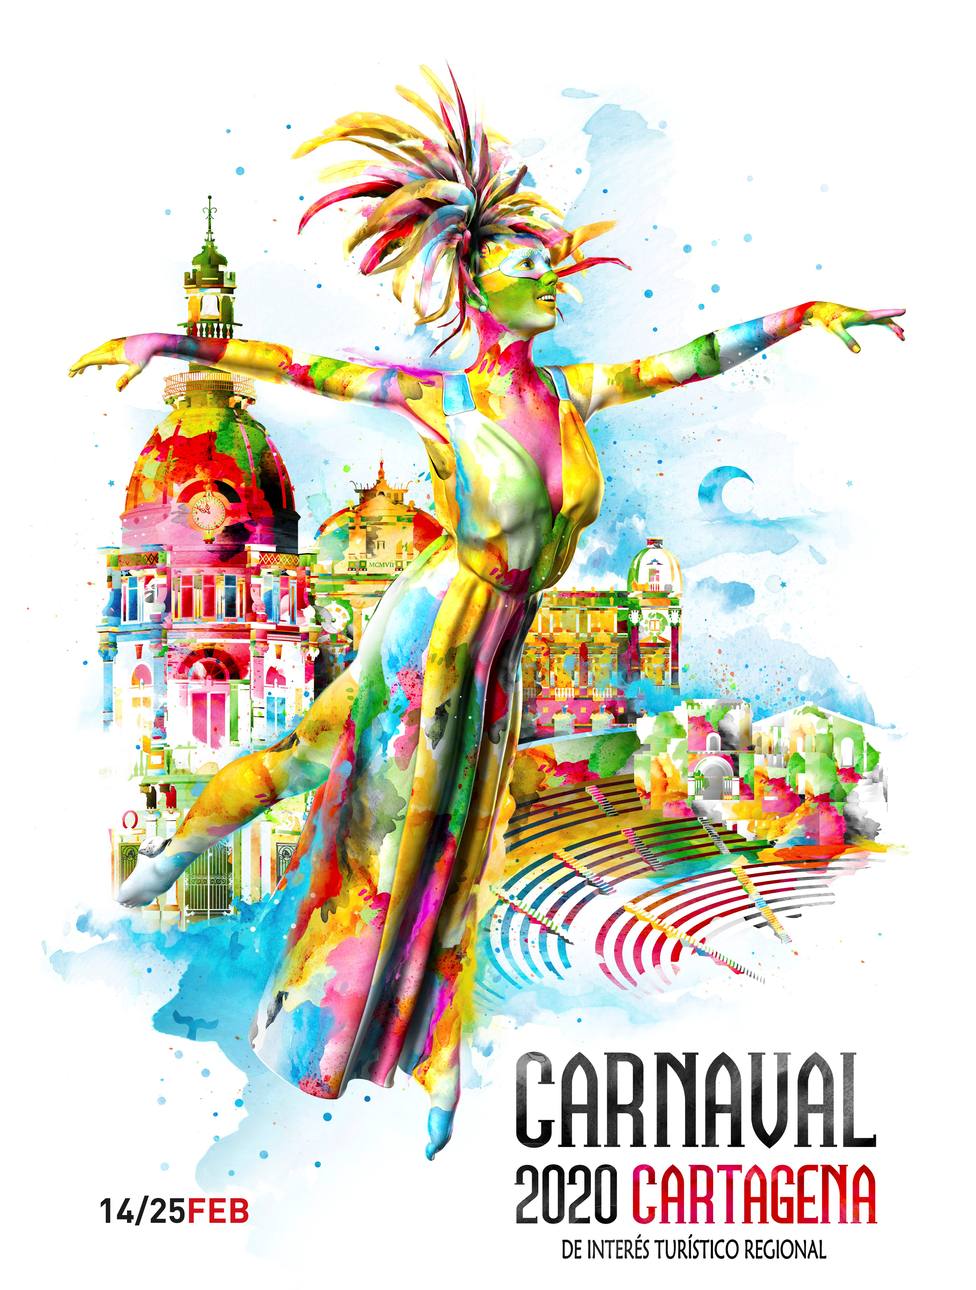 La figura de una mujer feliz y sonriente promocionará el Carnaval 2020